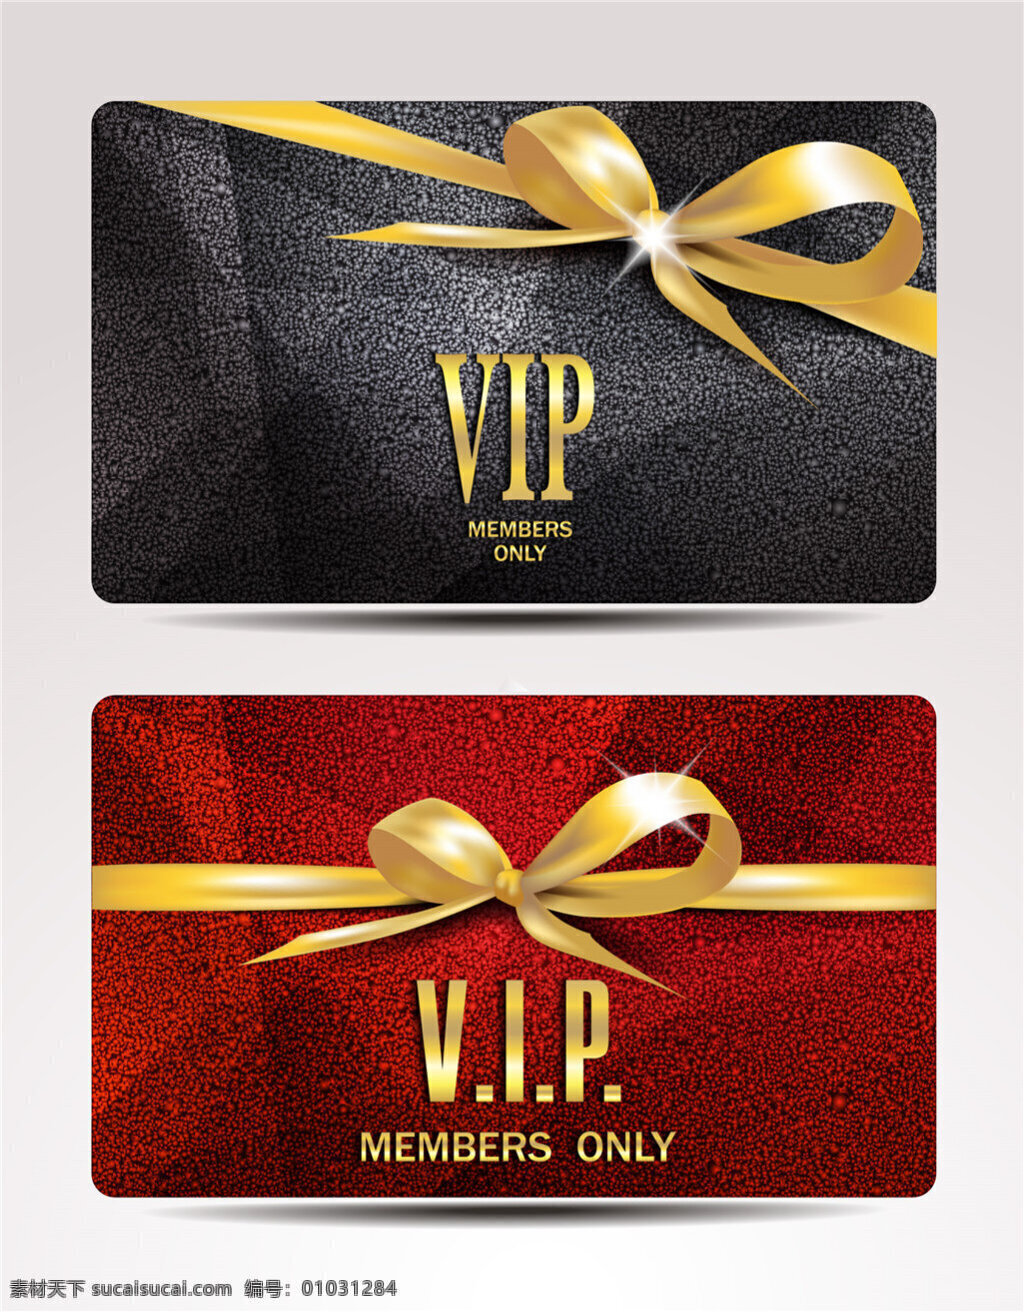 金质 会员卡 vip 卡 设计图 缤纷多彩 时尚矢量图片 卡片 矢量 时尚 优雅 设计矢量图片